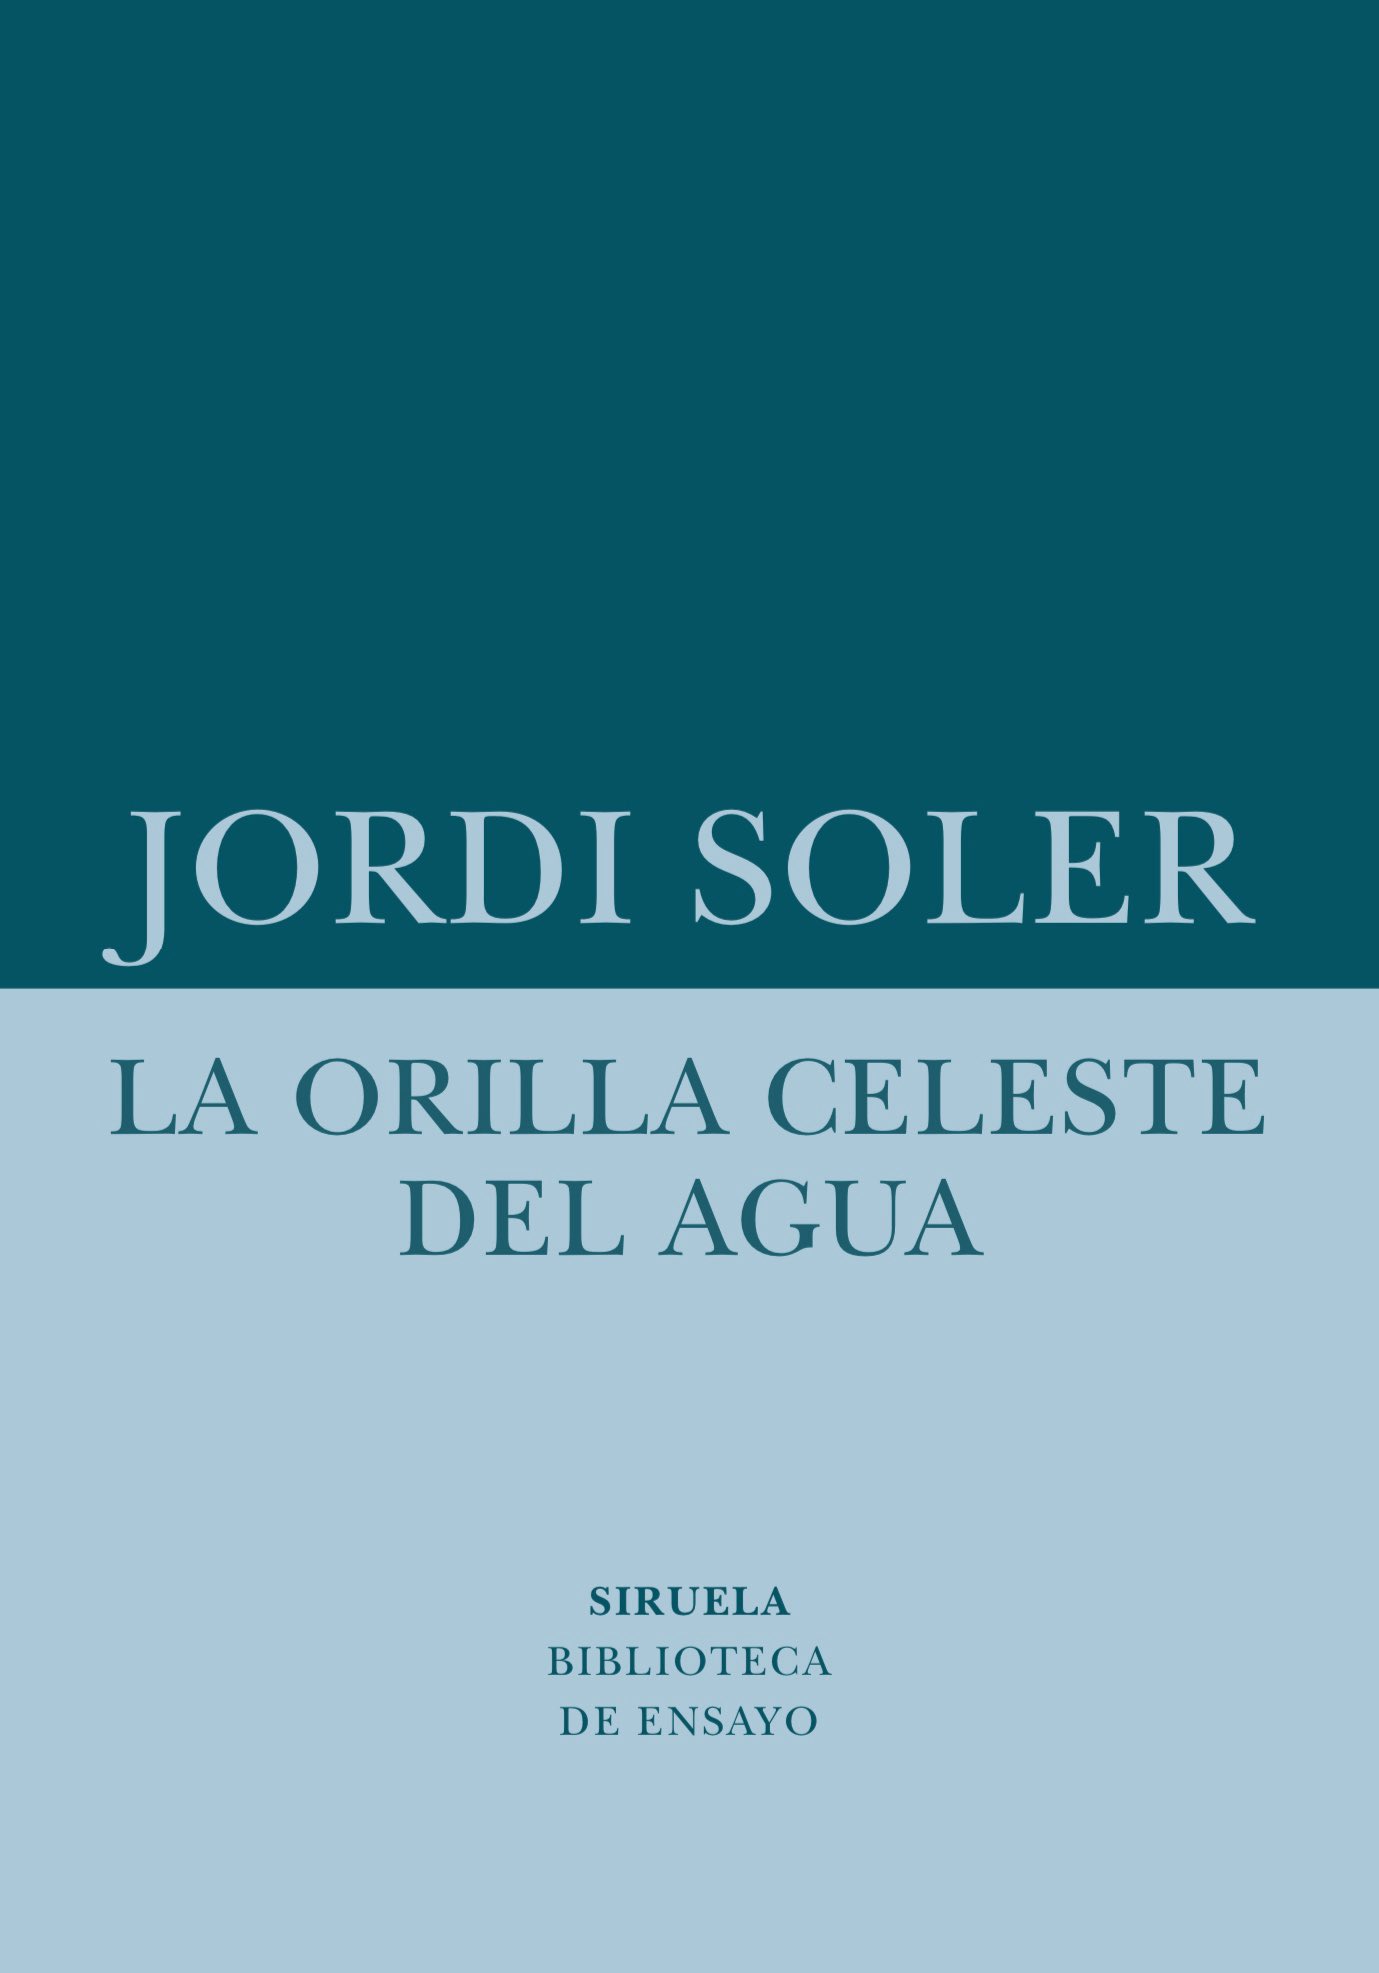 Jordi Soler: «No es lo mismo salir de casa y caminar distraído, que hacerlo mirando activamente» 1